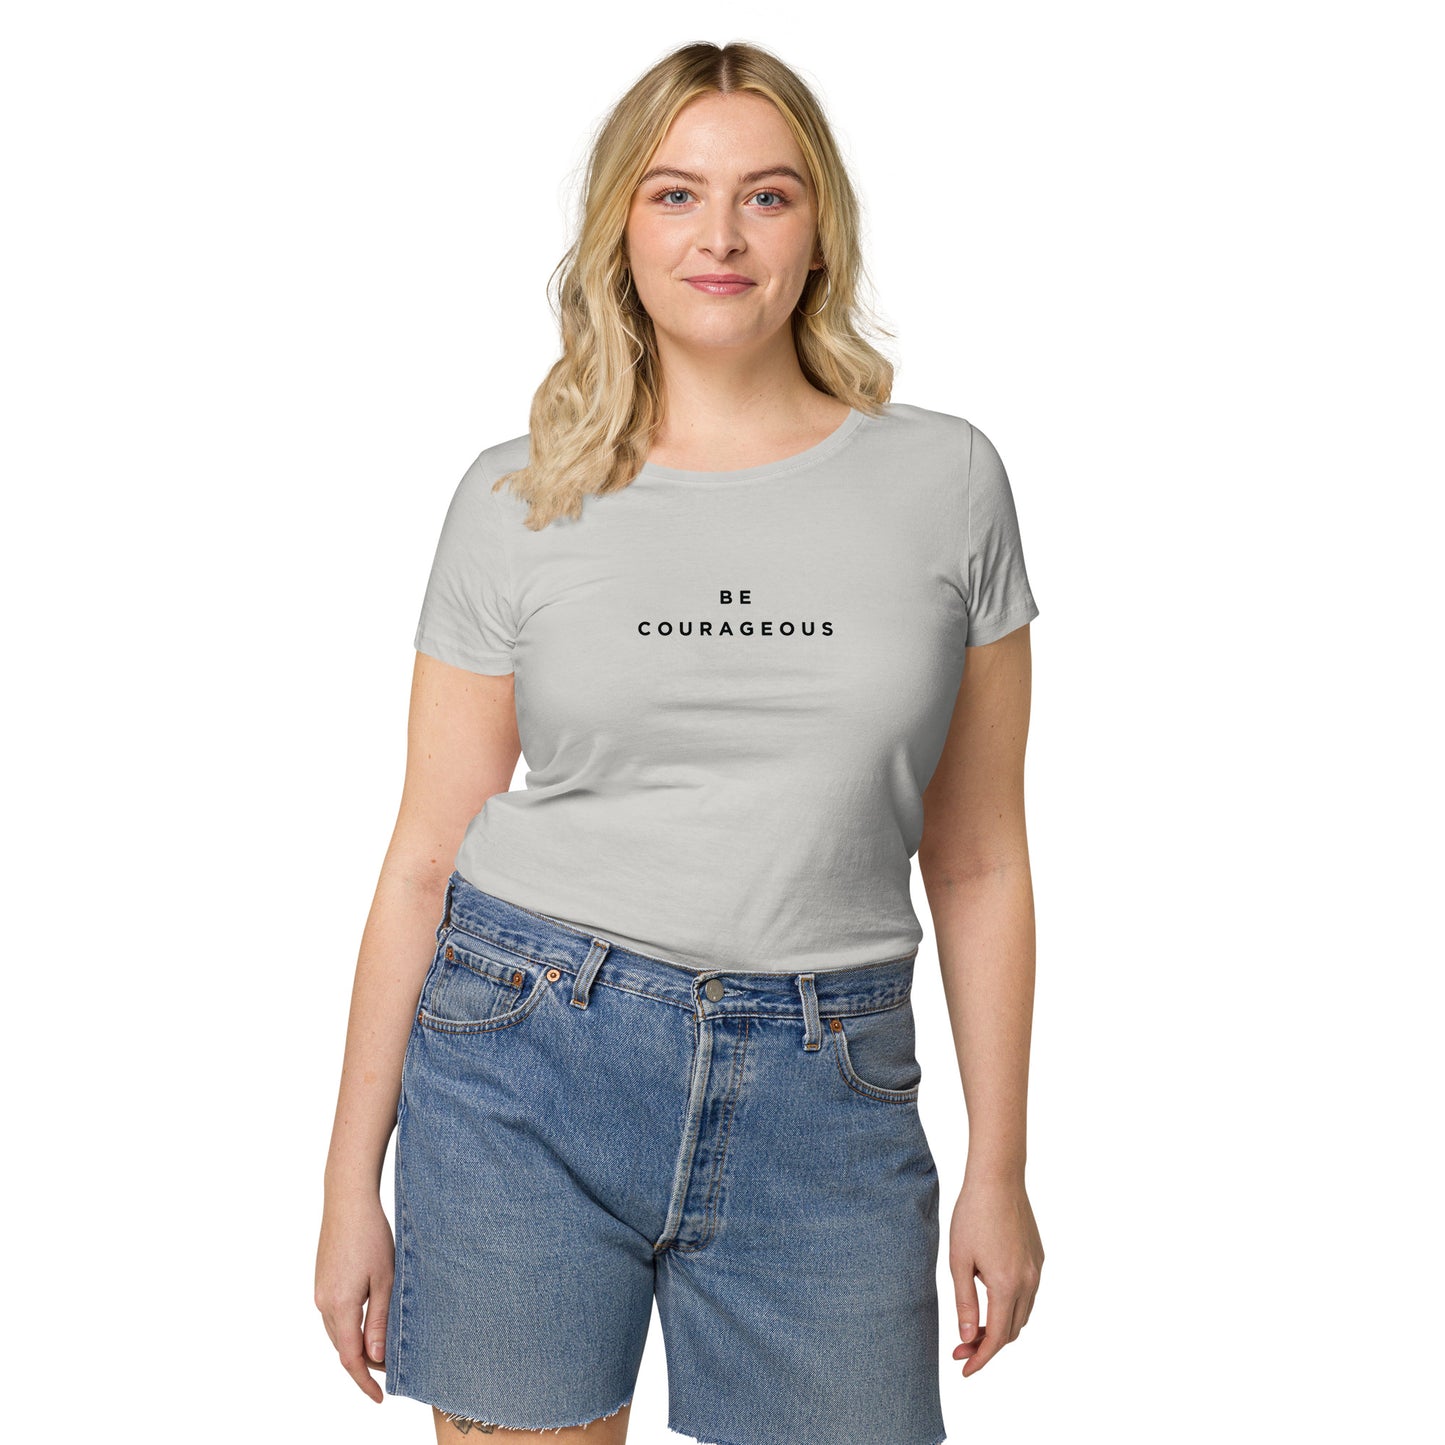 Be Courageous Women’s 100% Organic Cotton T-Shirt